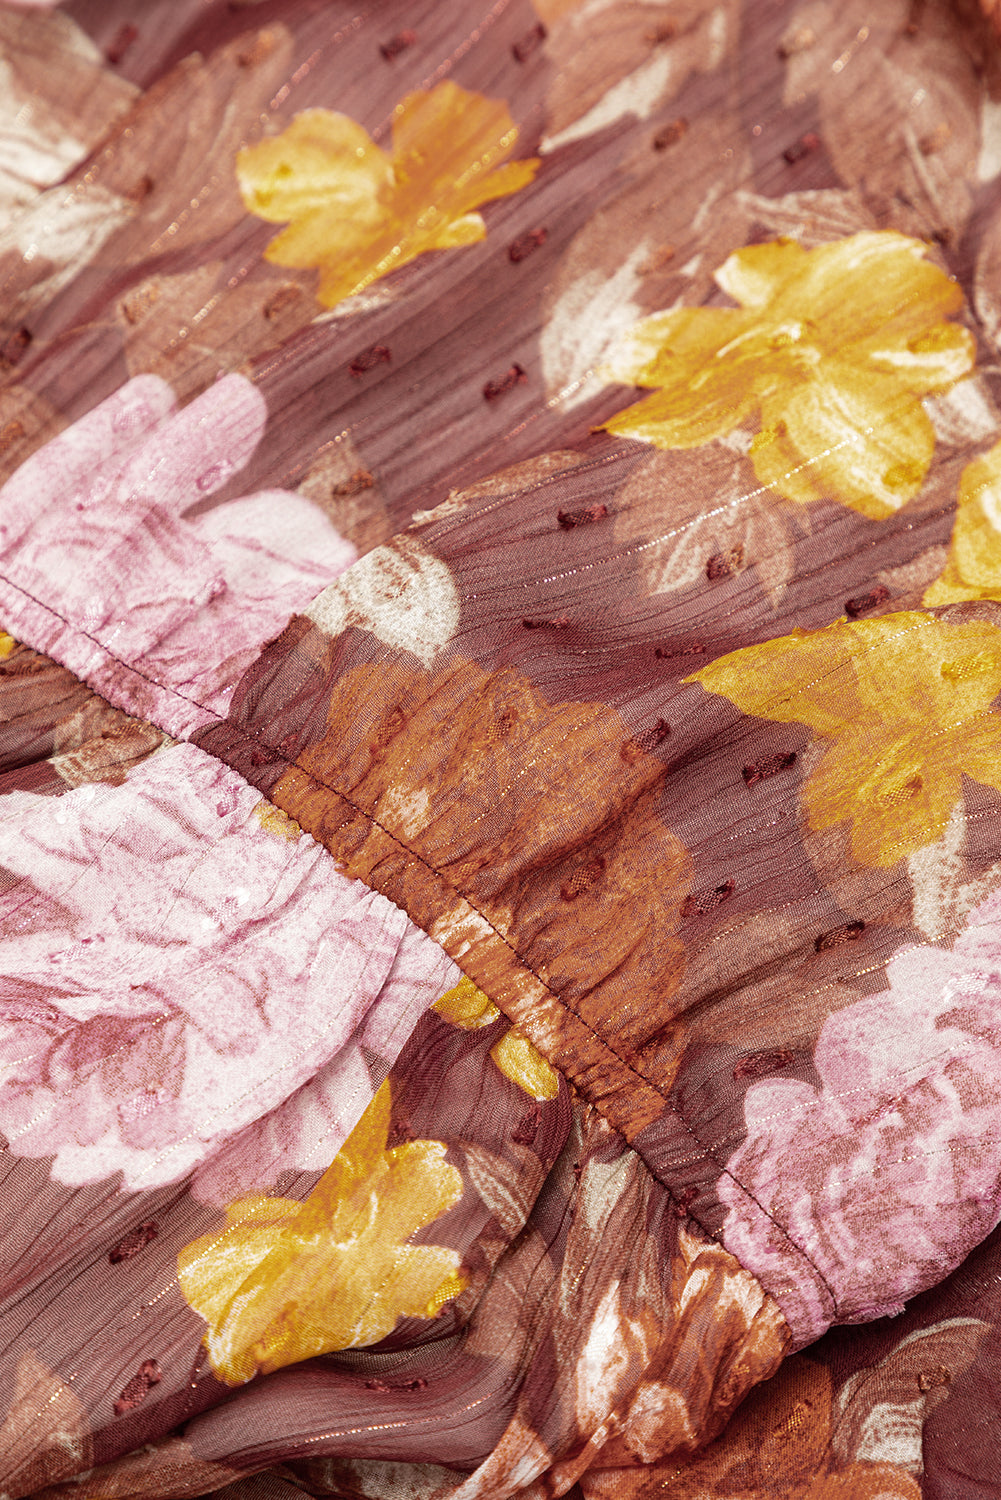 Robe florale multicolore froncée à col haut et à lacets taille haute